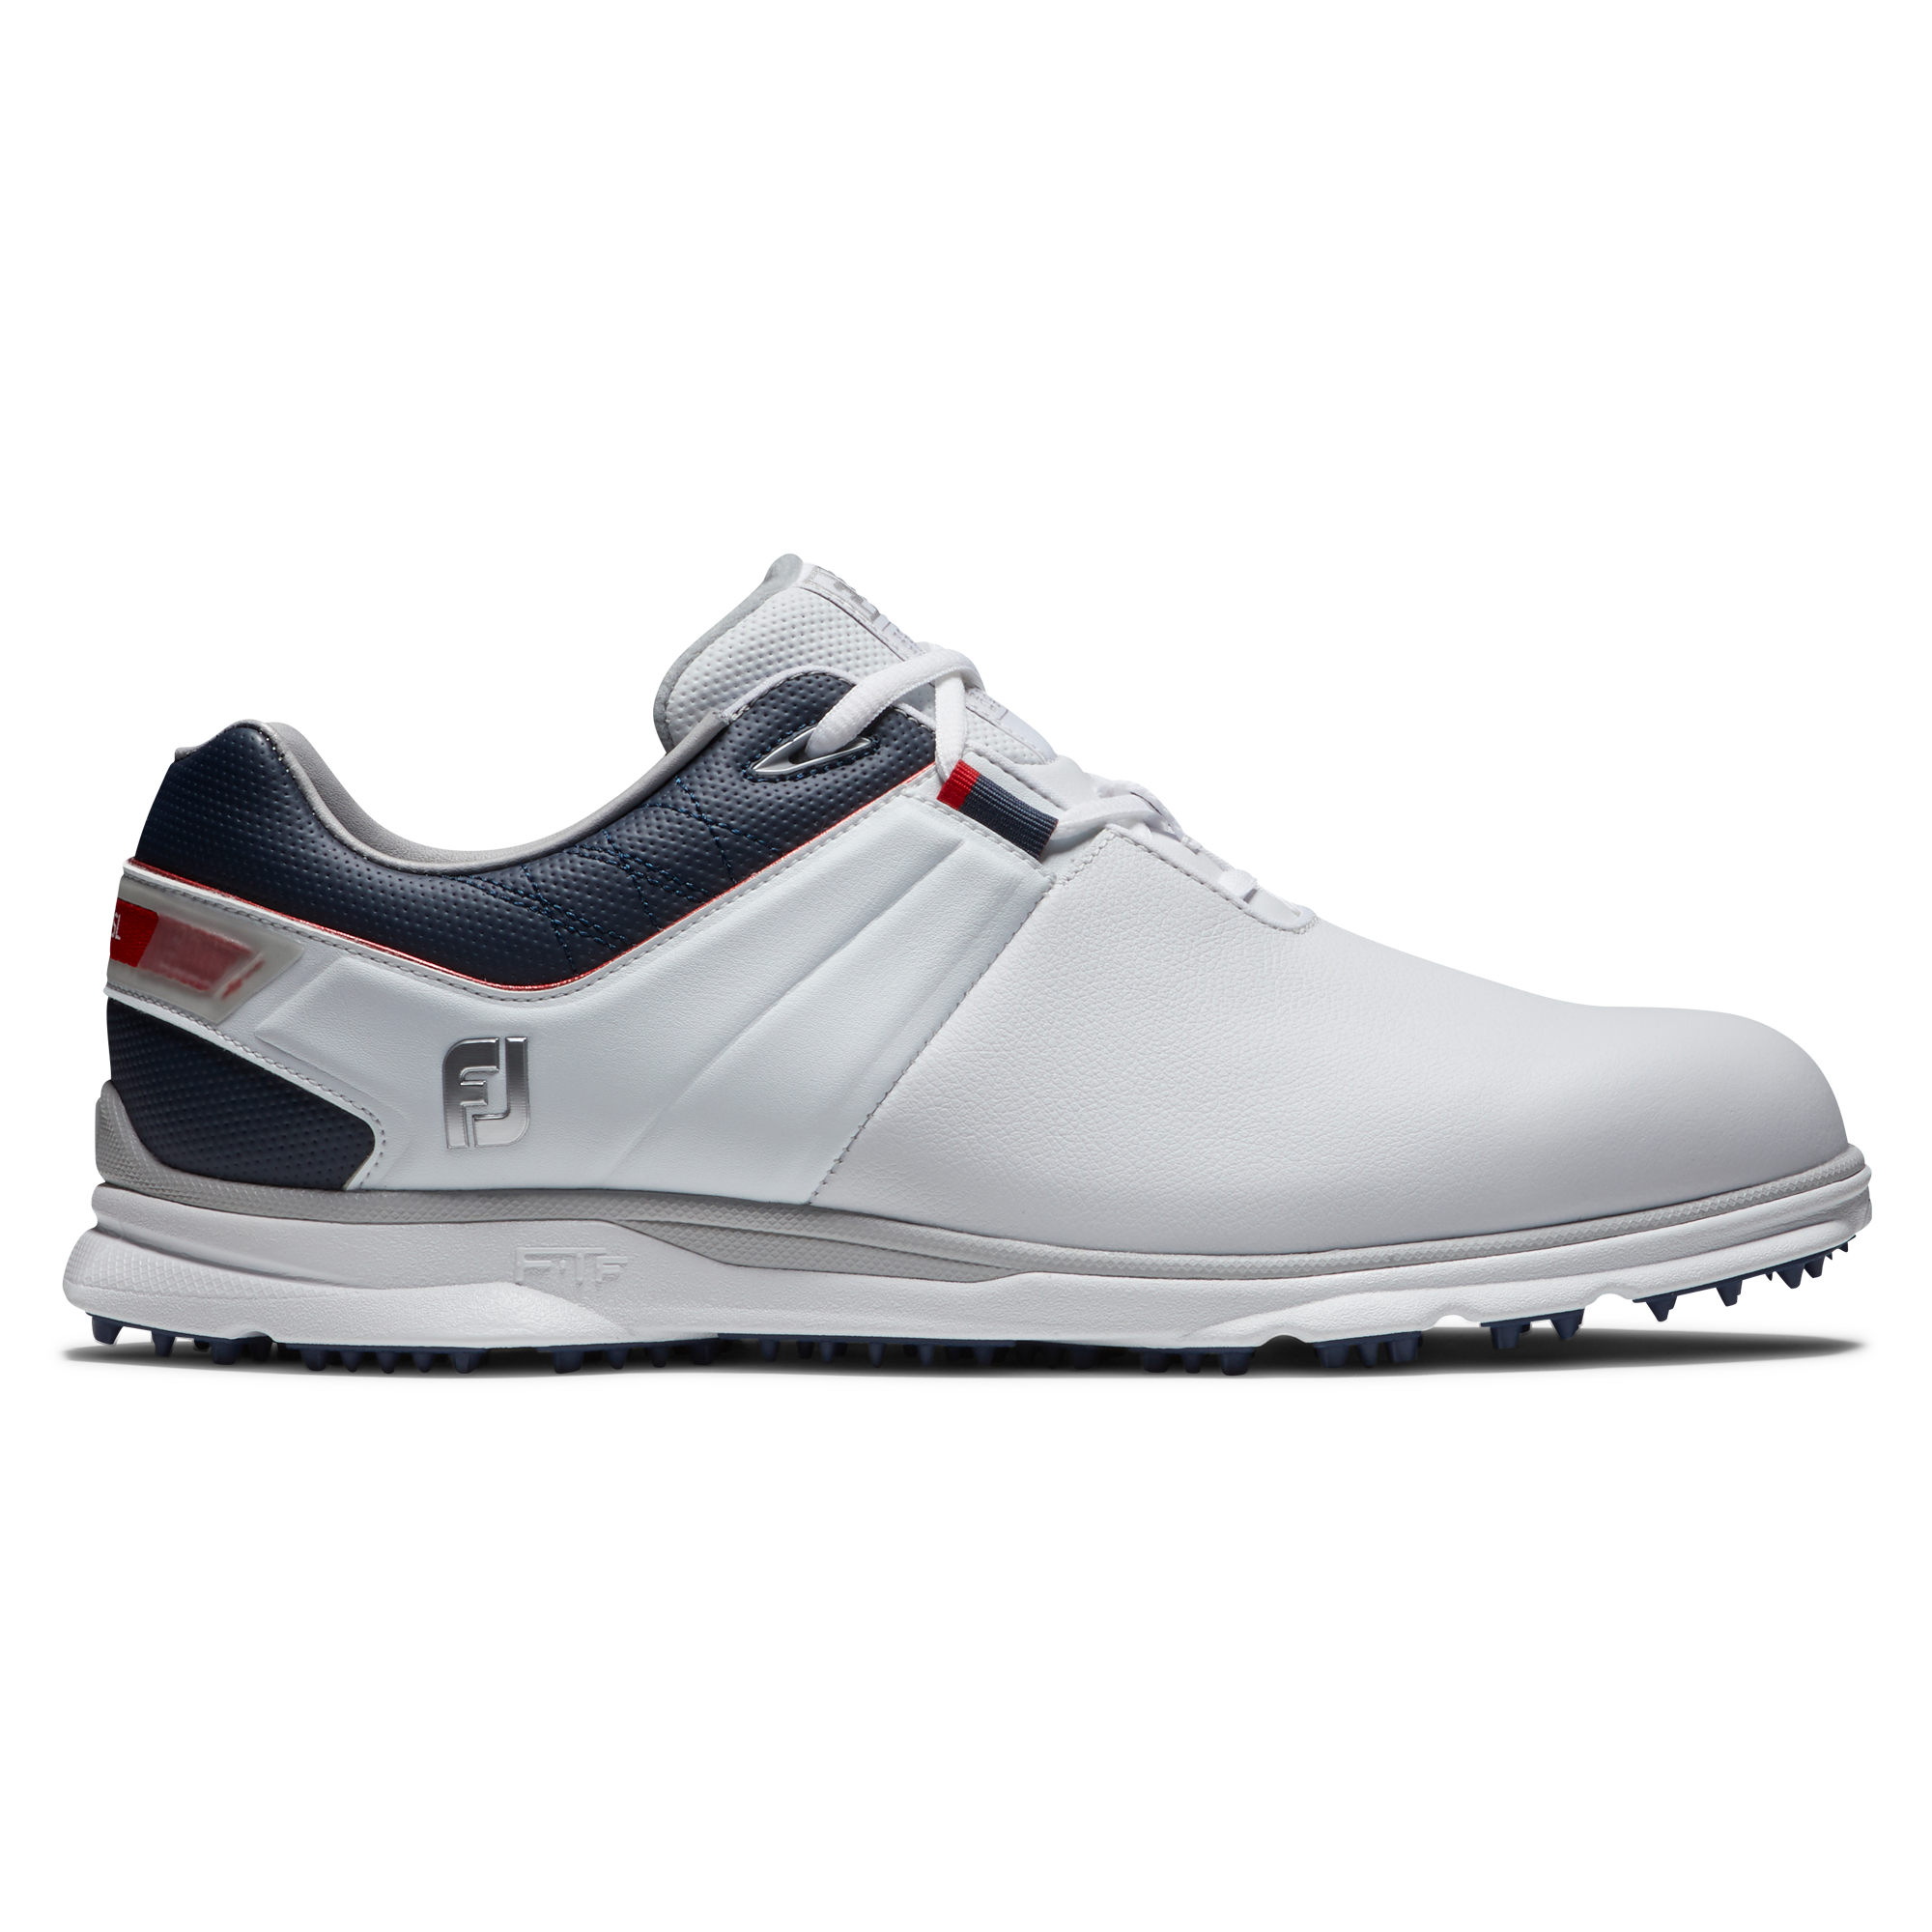 FootJoy Pro/SL pánské golfové boty, bílé/tmavě modré, vel. 9,5 UK